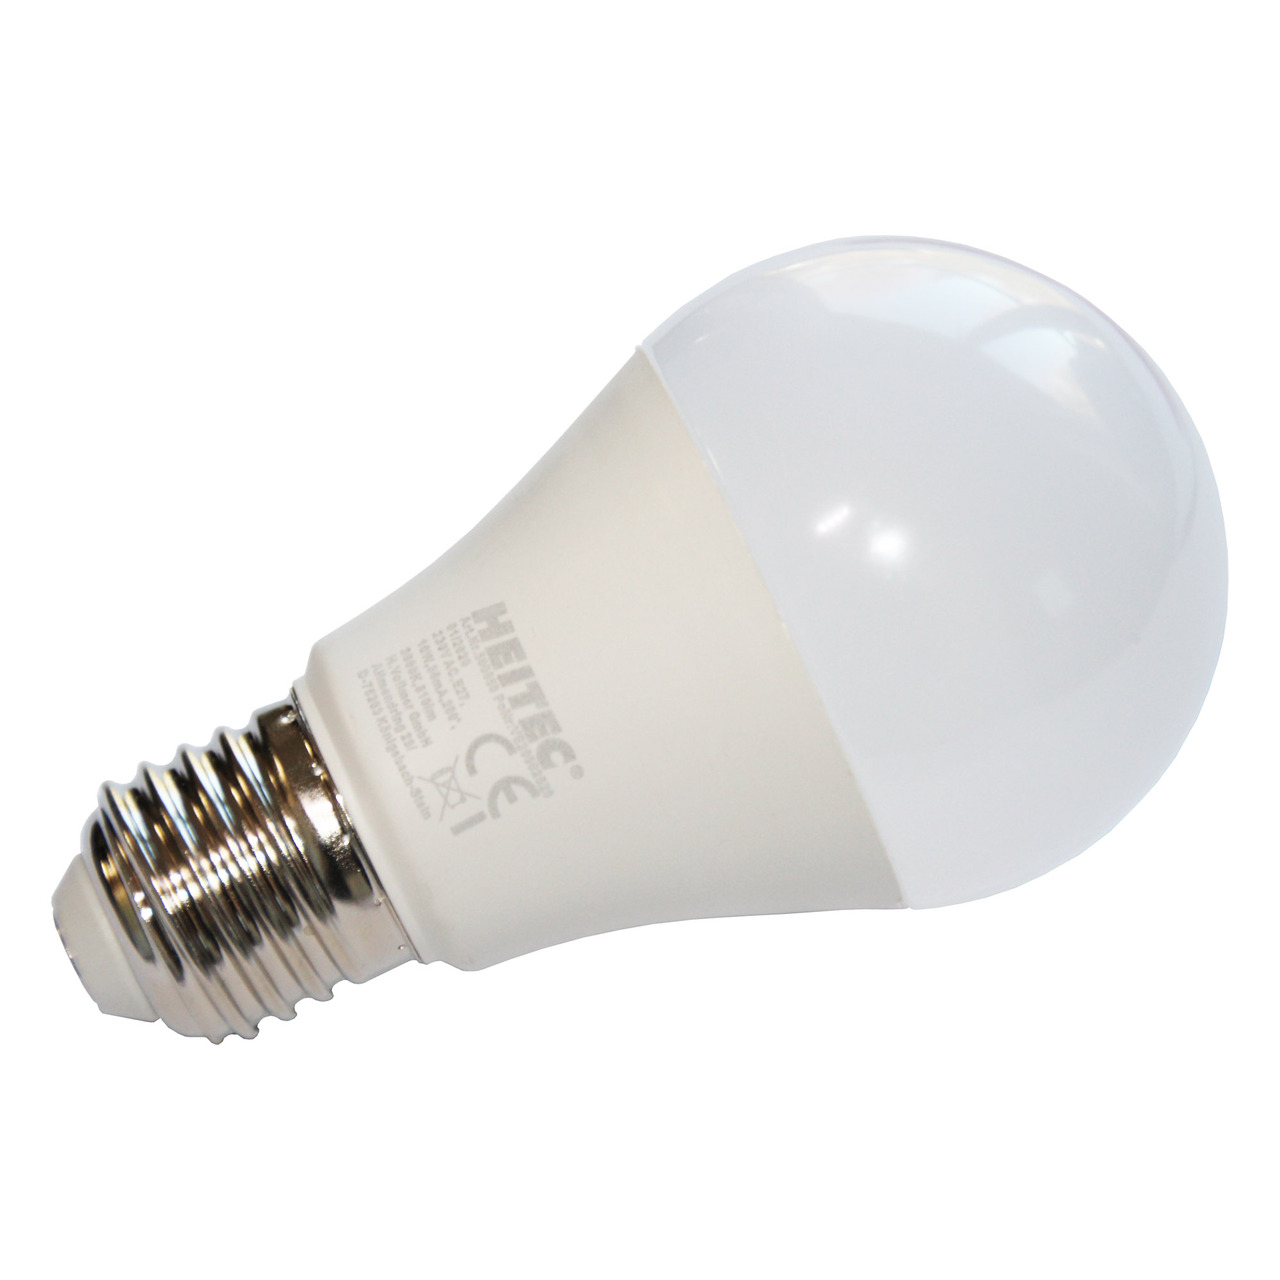 HEITEC 7-W-LED-Lampe A60- E27- 600 lm- warmweiss- matt unter Beleuchtung